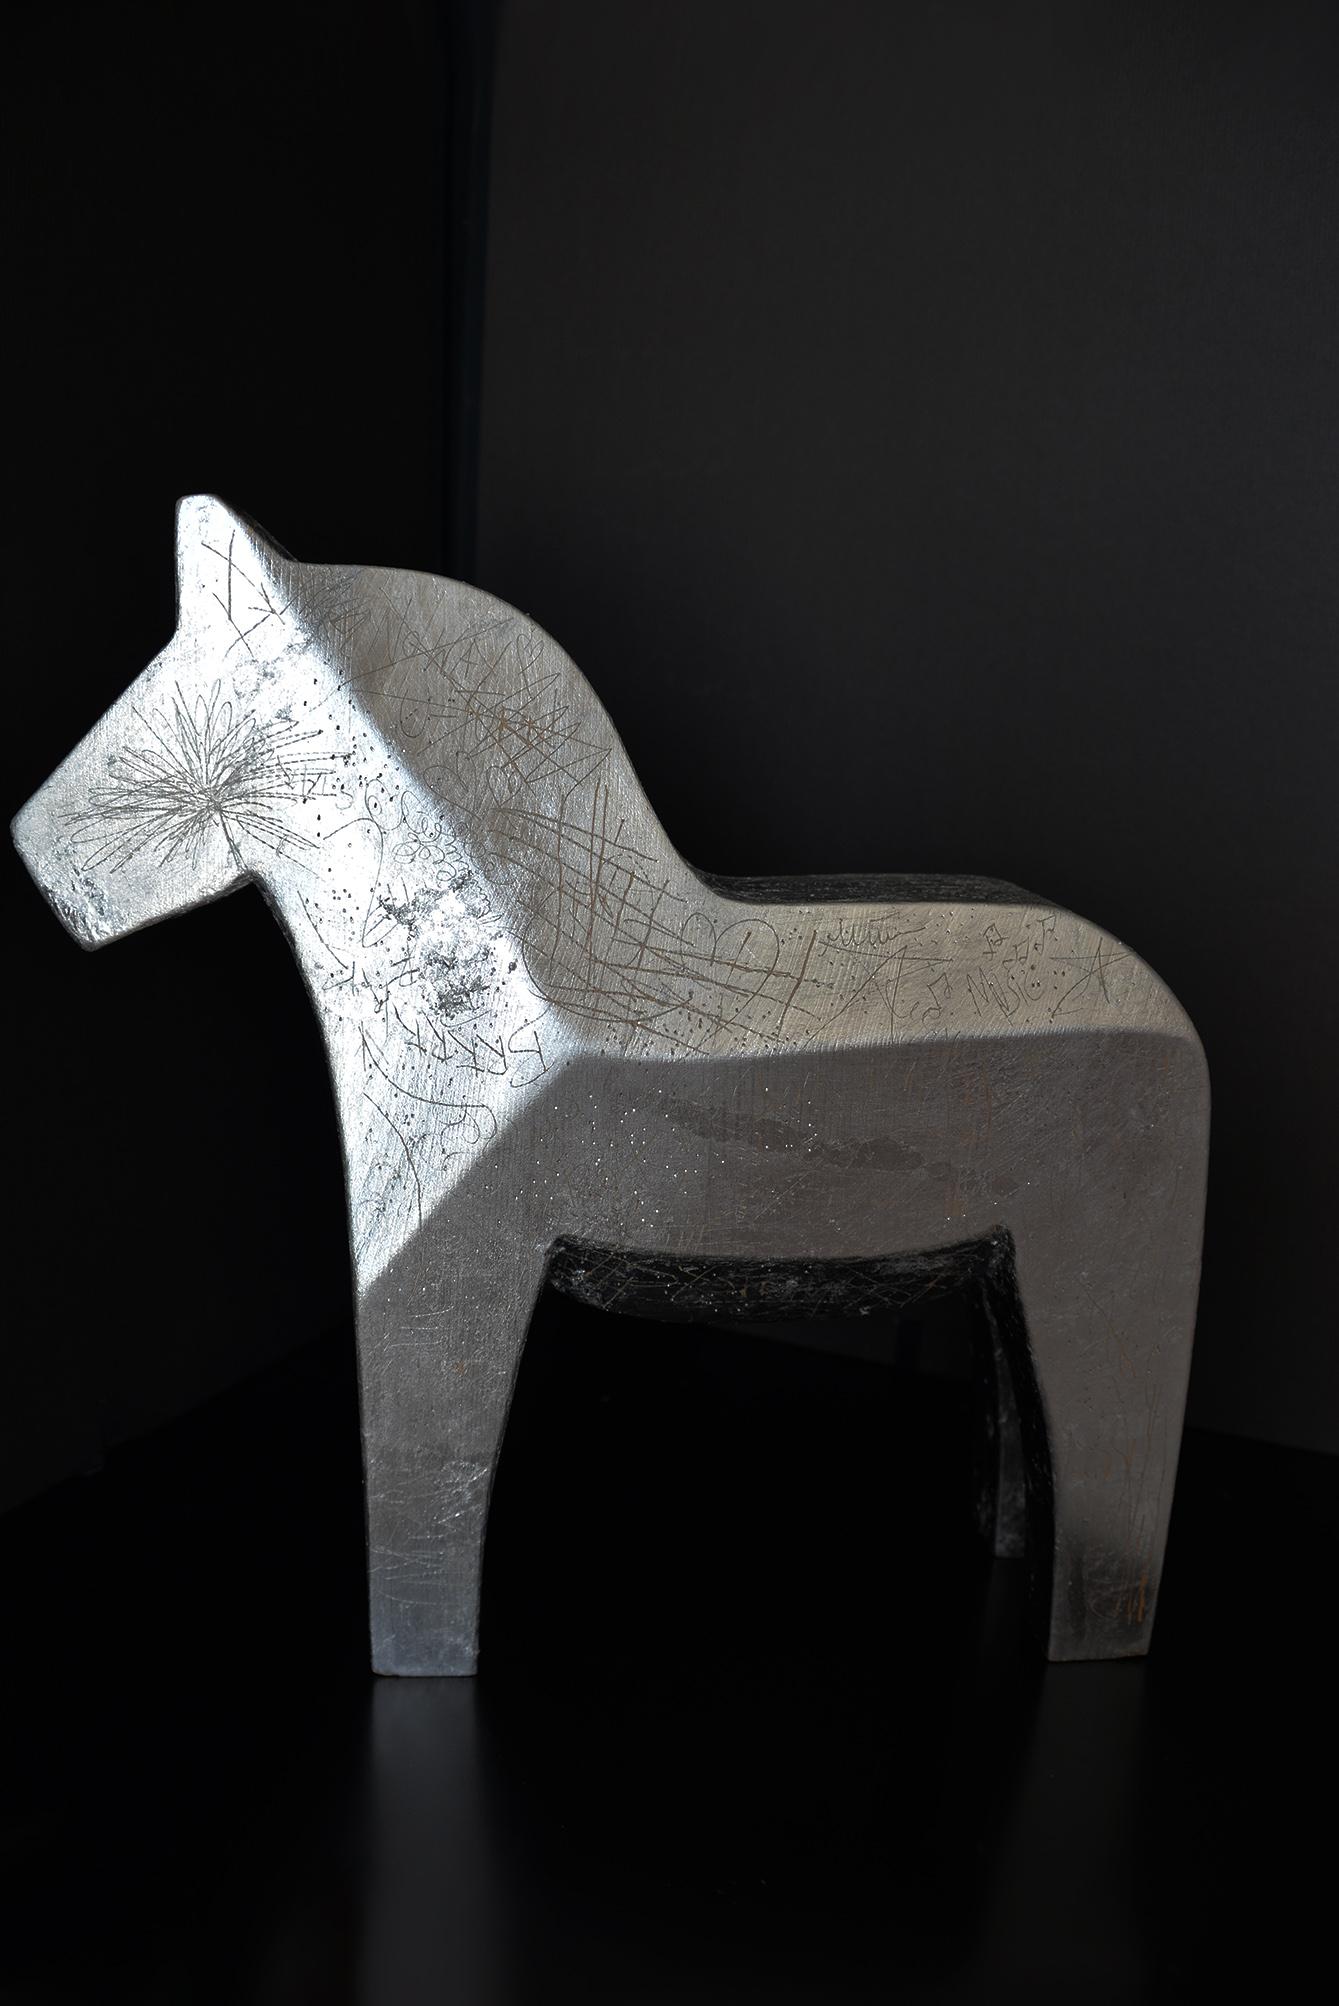 Bohême, silver leaf horse sculpture - Brown Figurative Sculpture by K-OD